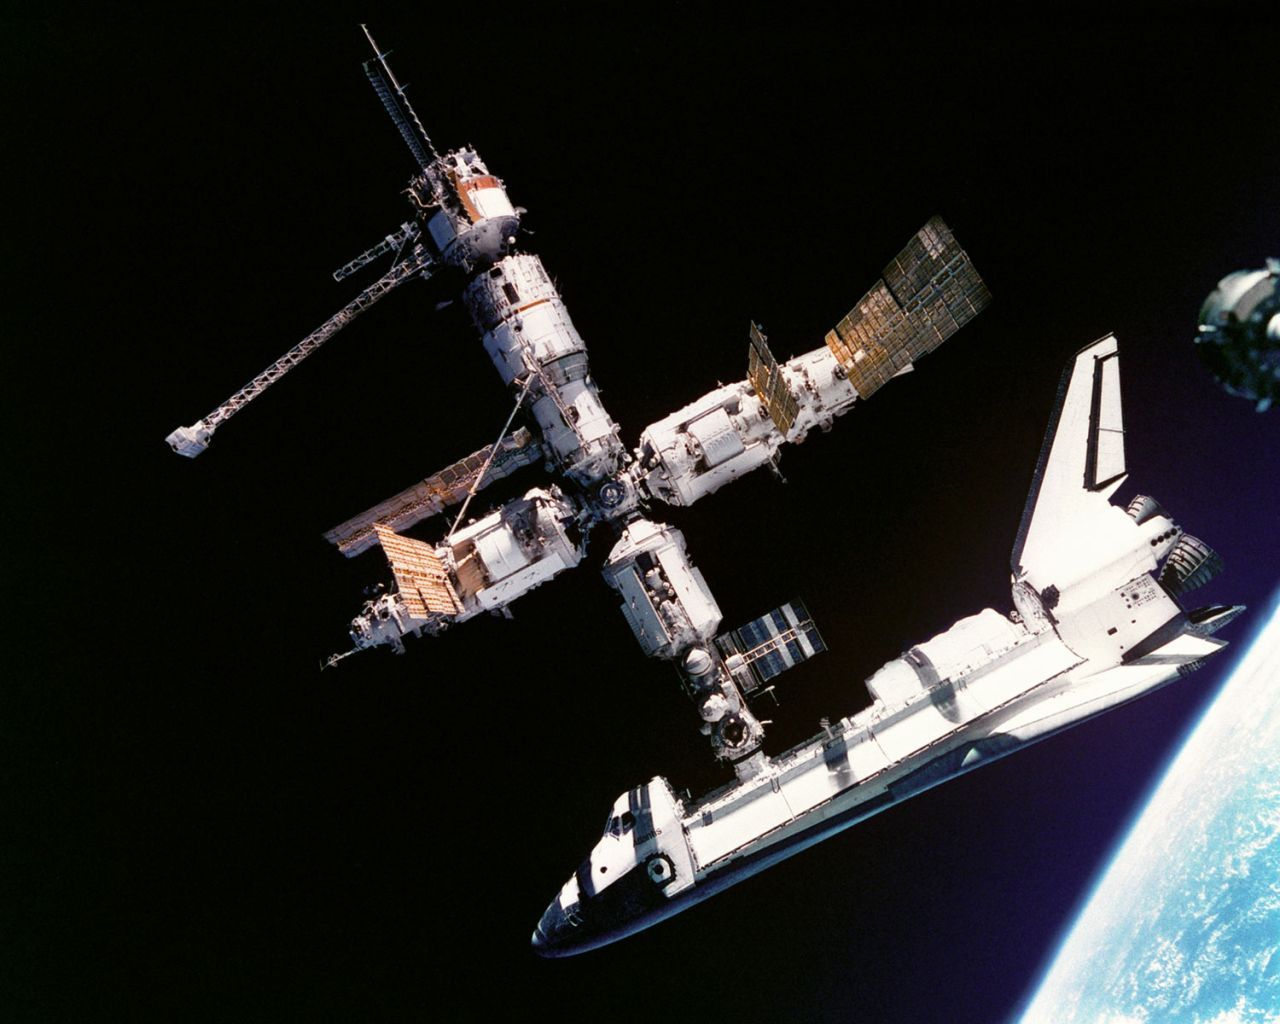 Geplant als preiswerter Lastwagen fürs All, stellten sich die 5 Raumfähren des "Space Transportation System" als teure Raumtaxis heraus, die im Schnitt eine Milliarde pro Flug kosteten (hier "Atlantis" angedockt an die russische Raumstation "Mir"). Trotzdem, bis auf zwei tödliche Unfälle waren die insgesamt 135 Flüge der wiederverwendbaren Spaceshuttles Highlights für Astronauten und Raumfahrtfans.